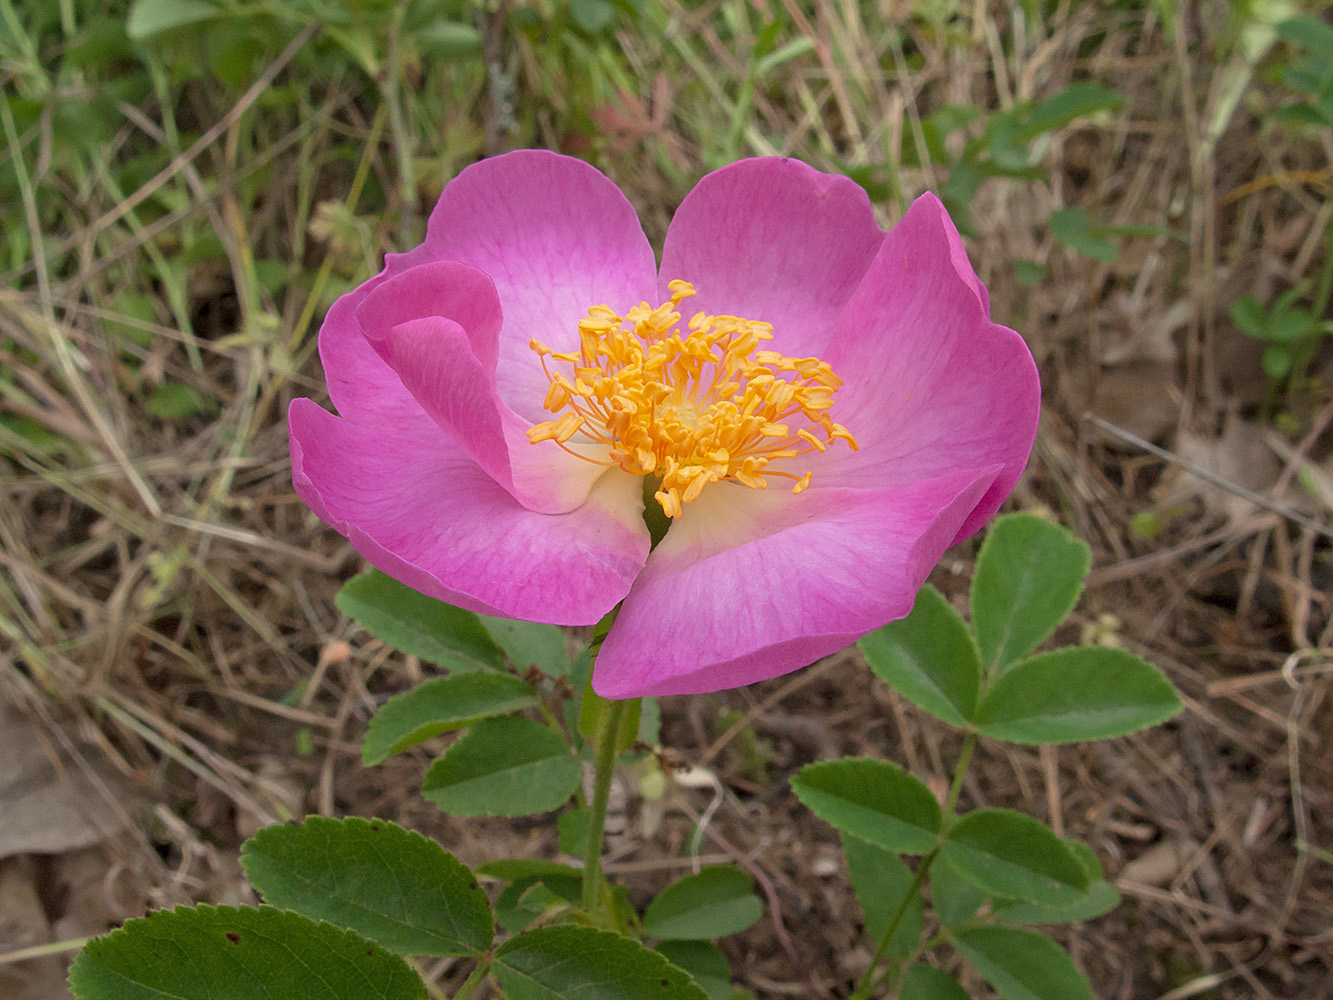 Image of Rosa gallica specimen.